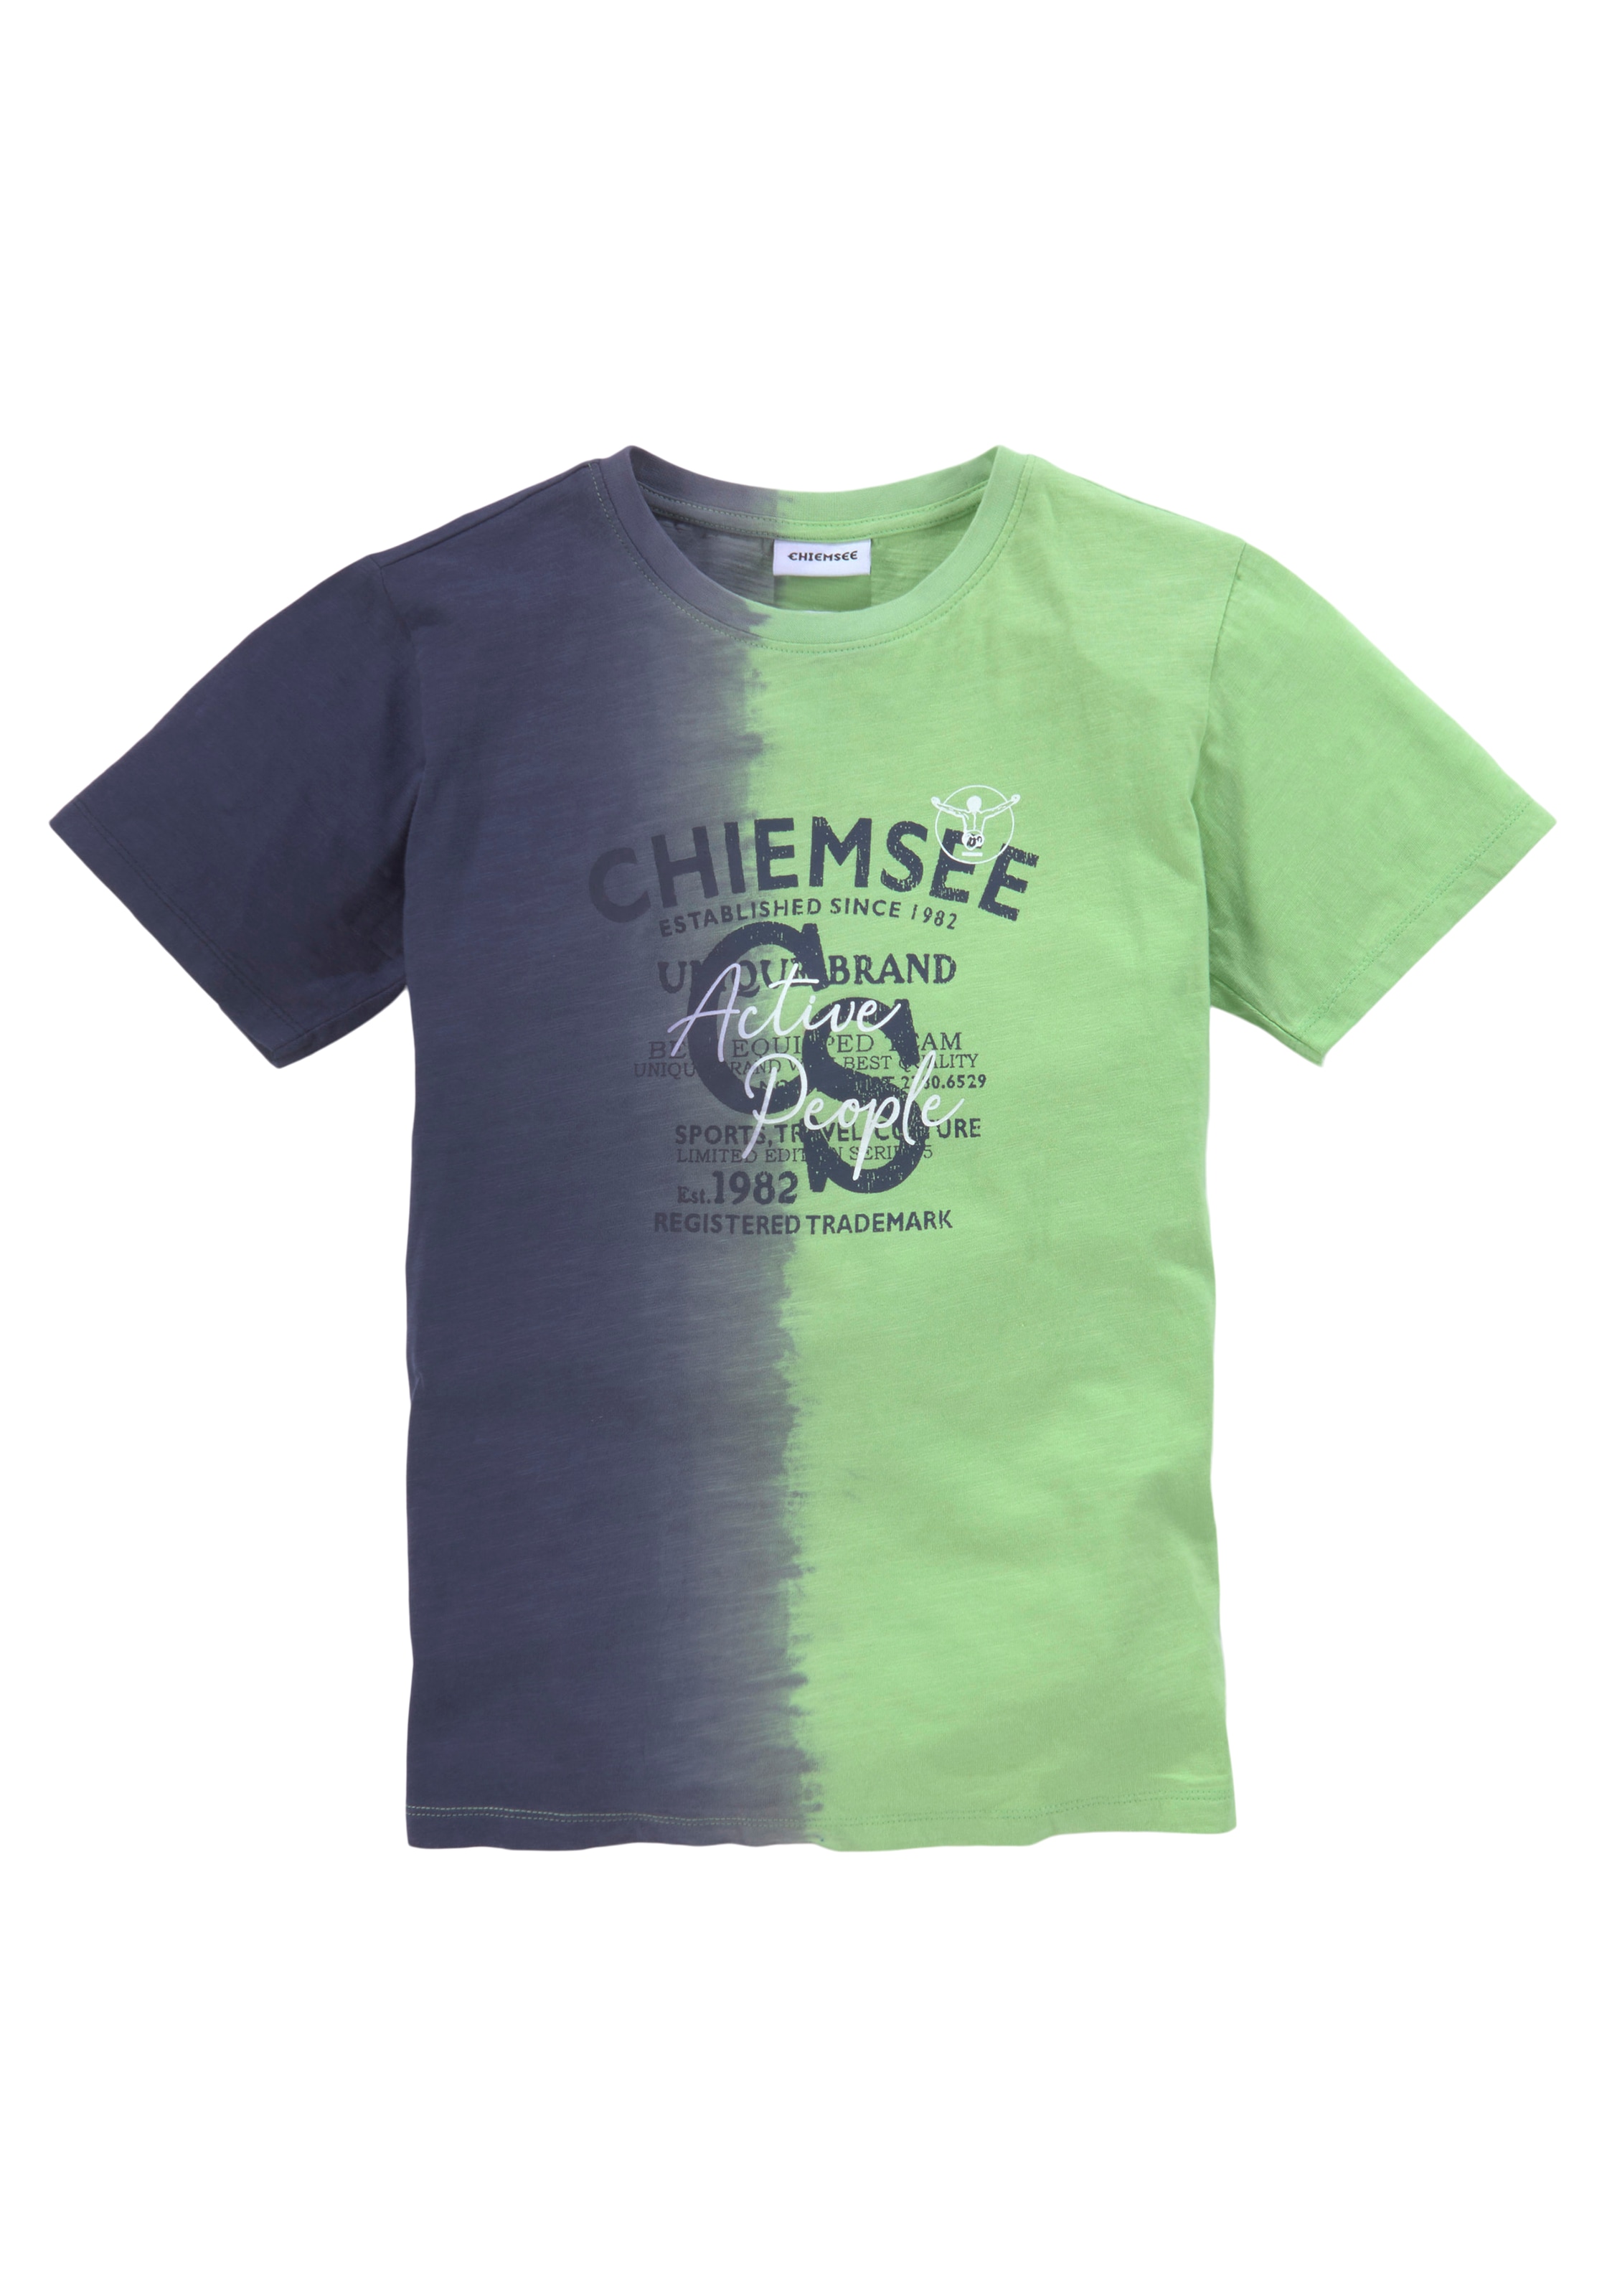 »Farbverlauf«, Chiemsee bei vertikalem mit Farbverlauf T-Shirt